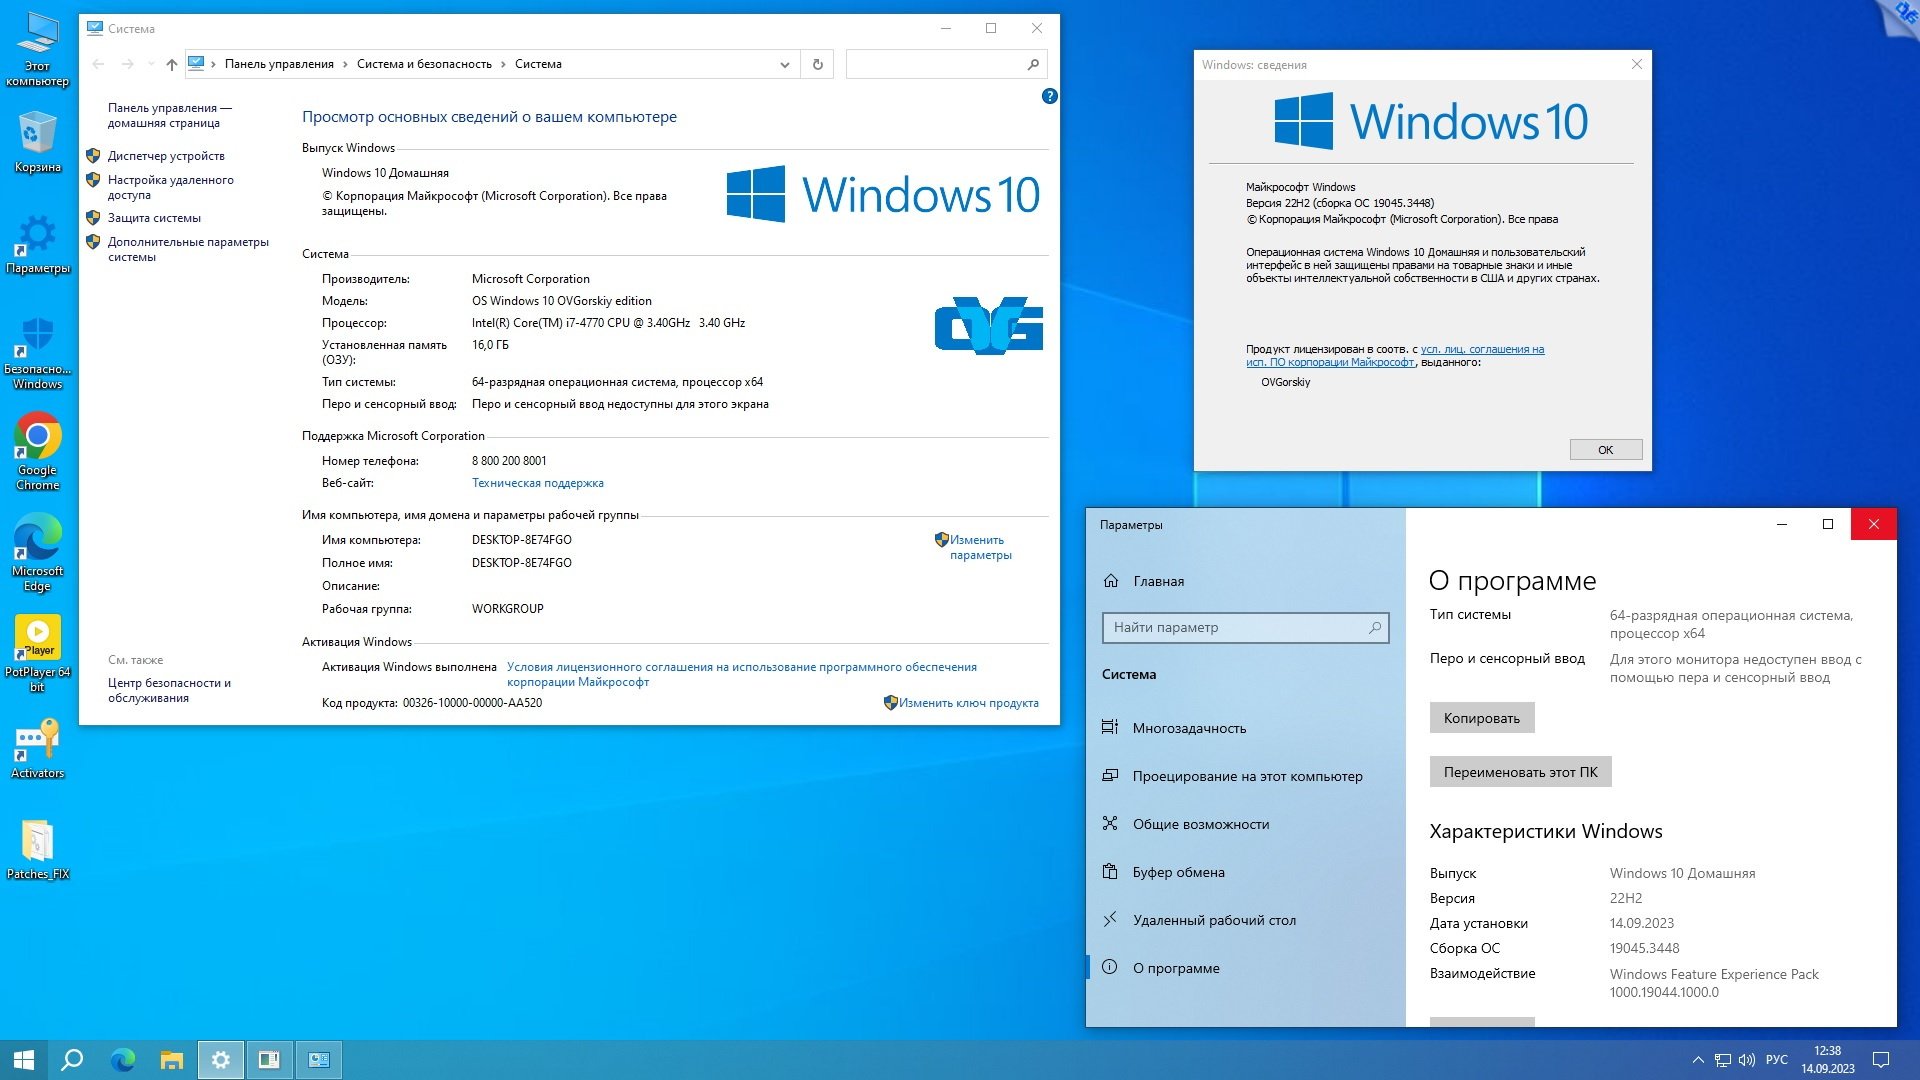 Windows 10 Pro компьютер. Windows 10 OVGORSKIY Edition. Как узнать сборку виндовс 10 на своем компьютере. Quick assist Windows 10 на русском. Windows 10 home 22h2 64 bit